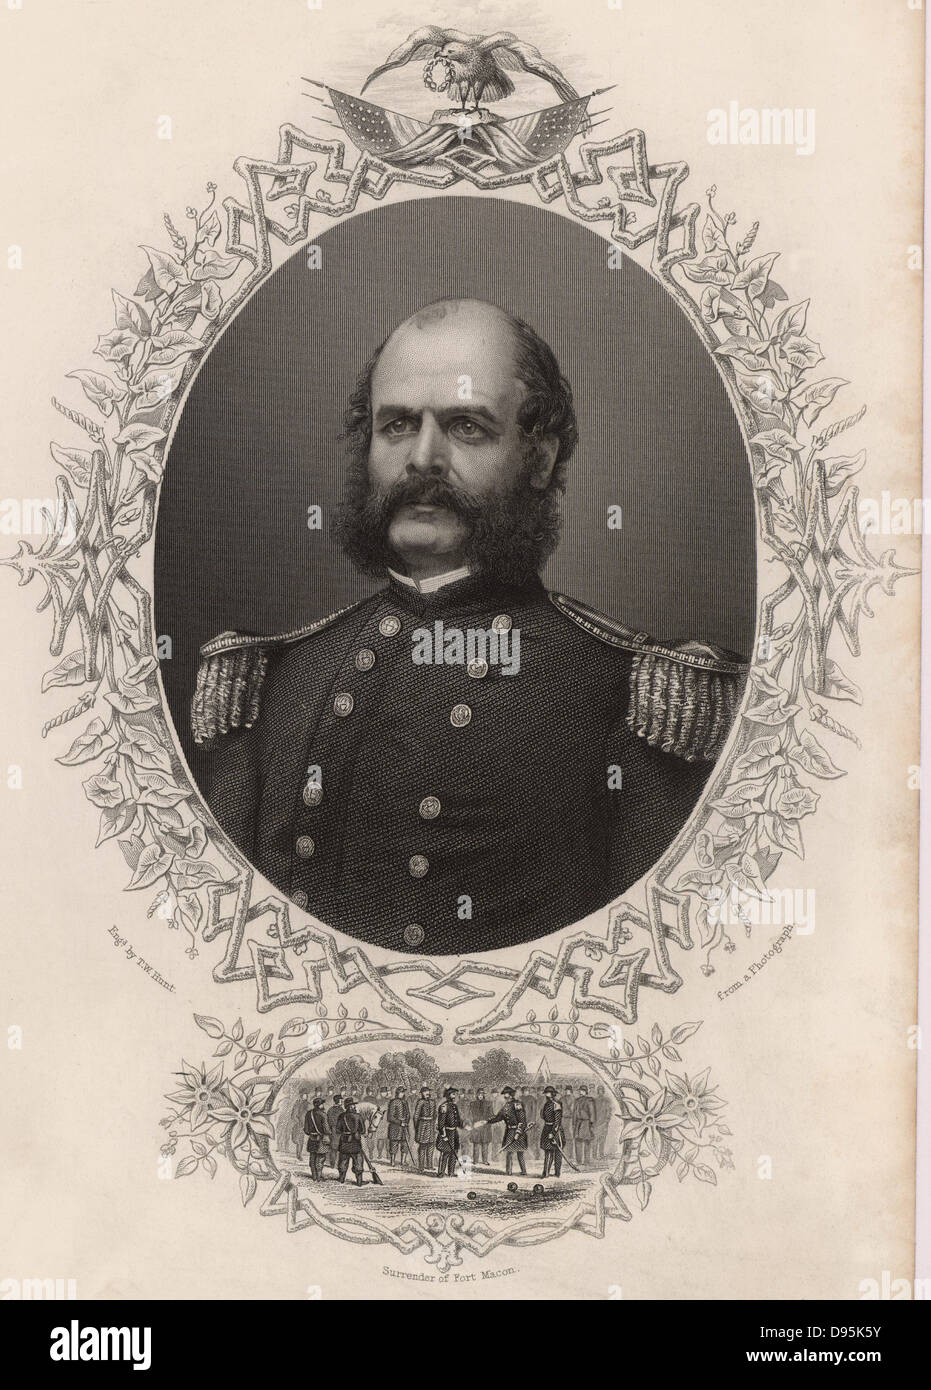 Ambrogio Everett Burnside (1824-81) soldato americano; generale unionista nella guerra civile americana. Il suo stile di capelli facciali è stato chiamato Burnsides ed è ora noto come le basette. Incisione Foto Stock